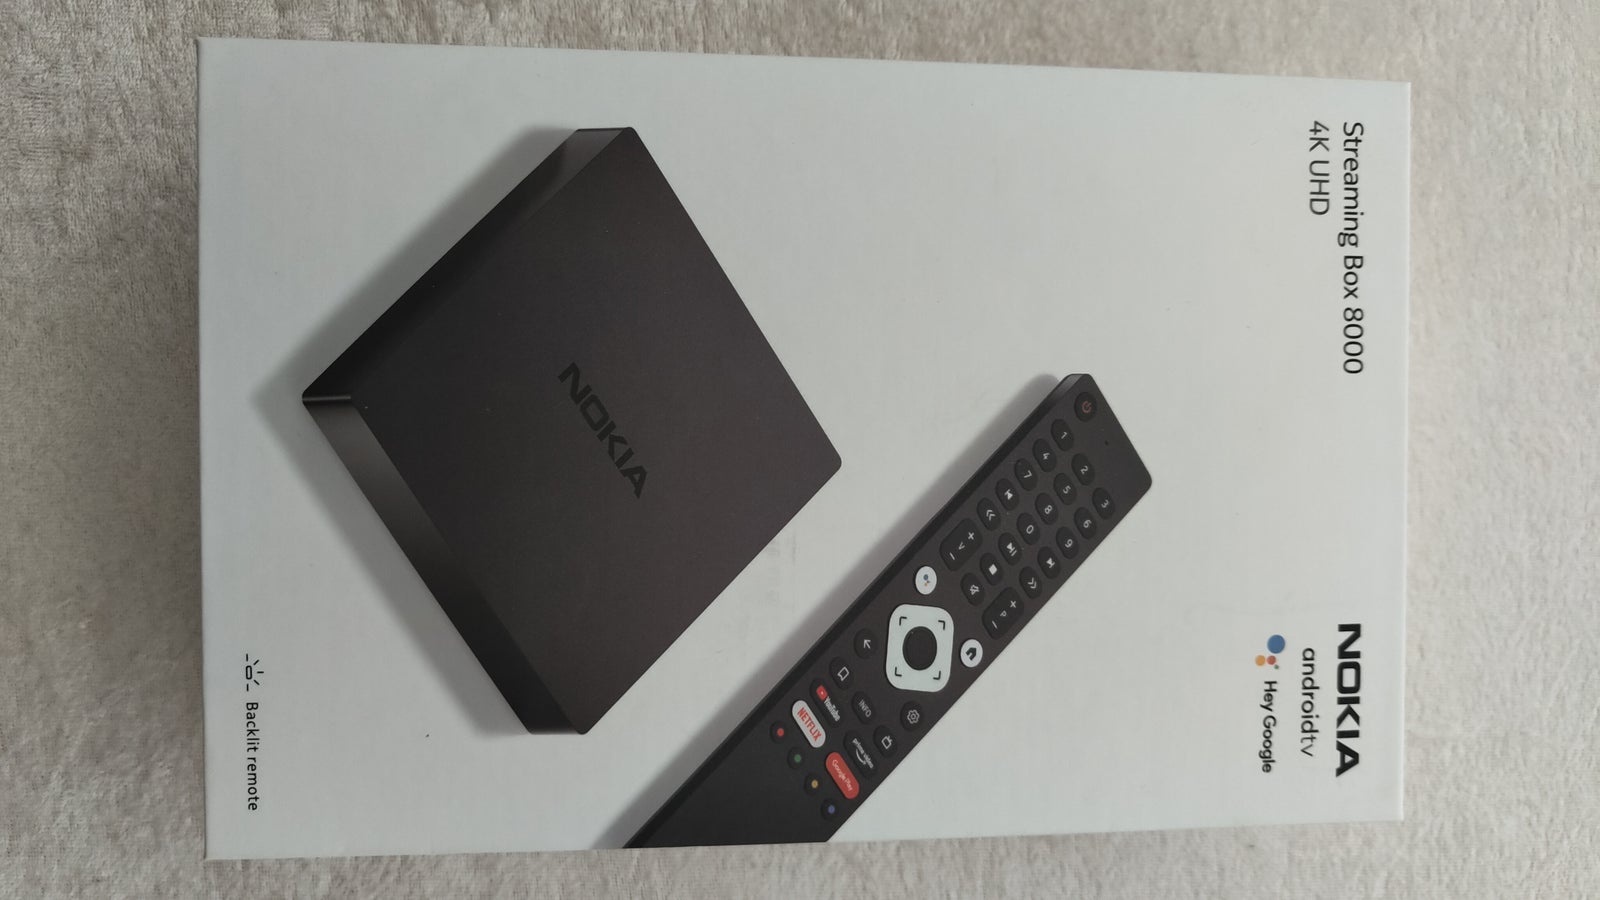 Nokia Streaming Box 8000, Nokia, 8000